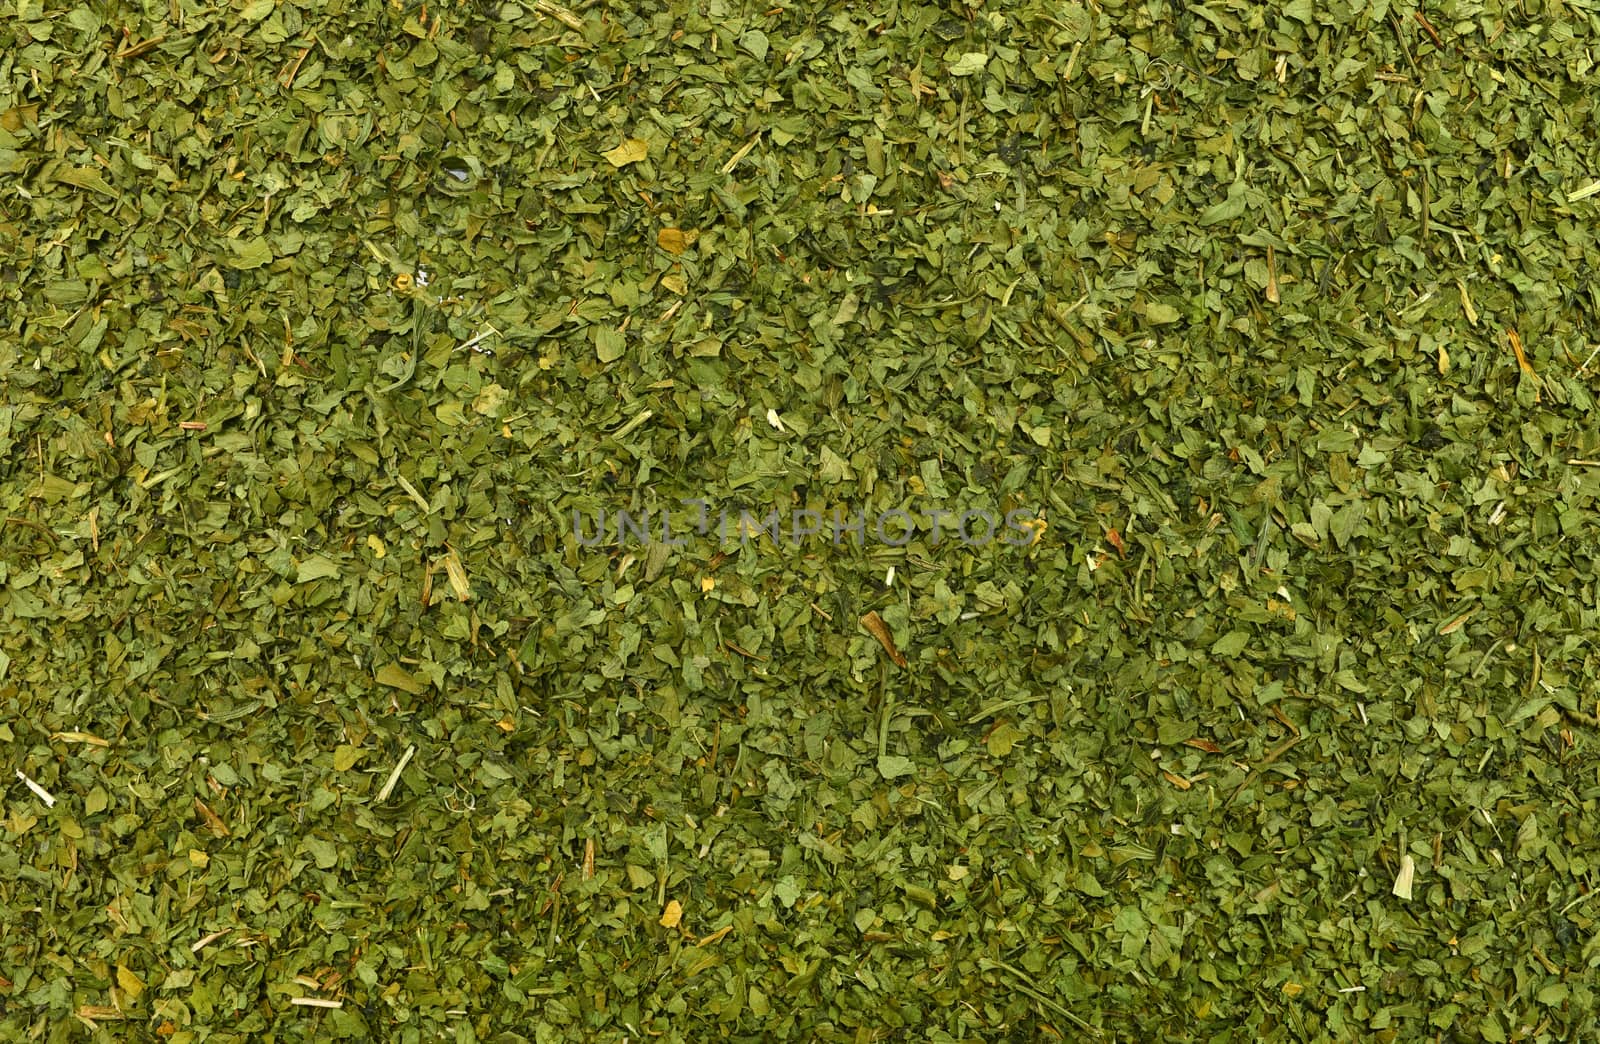 dry parsley texture by tony4urban